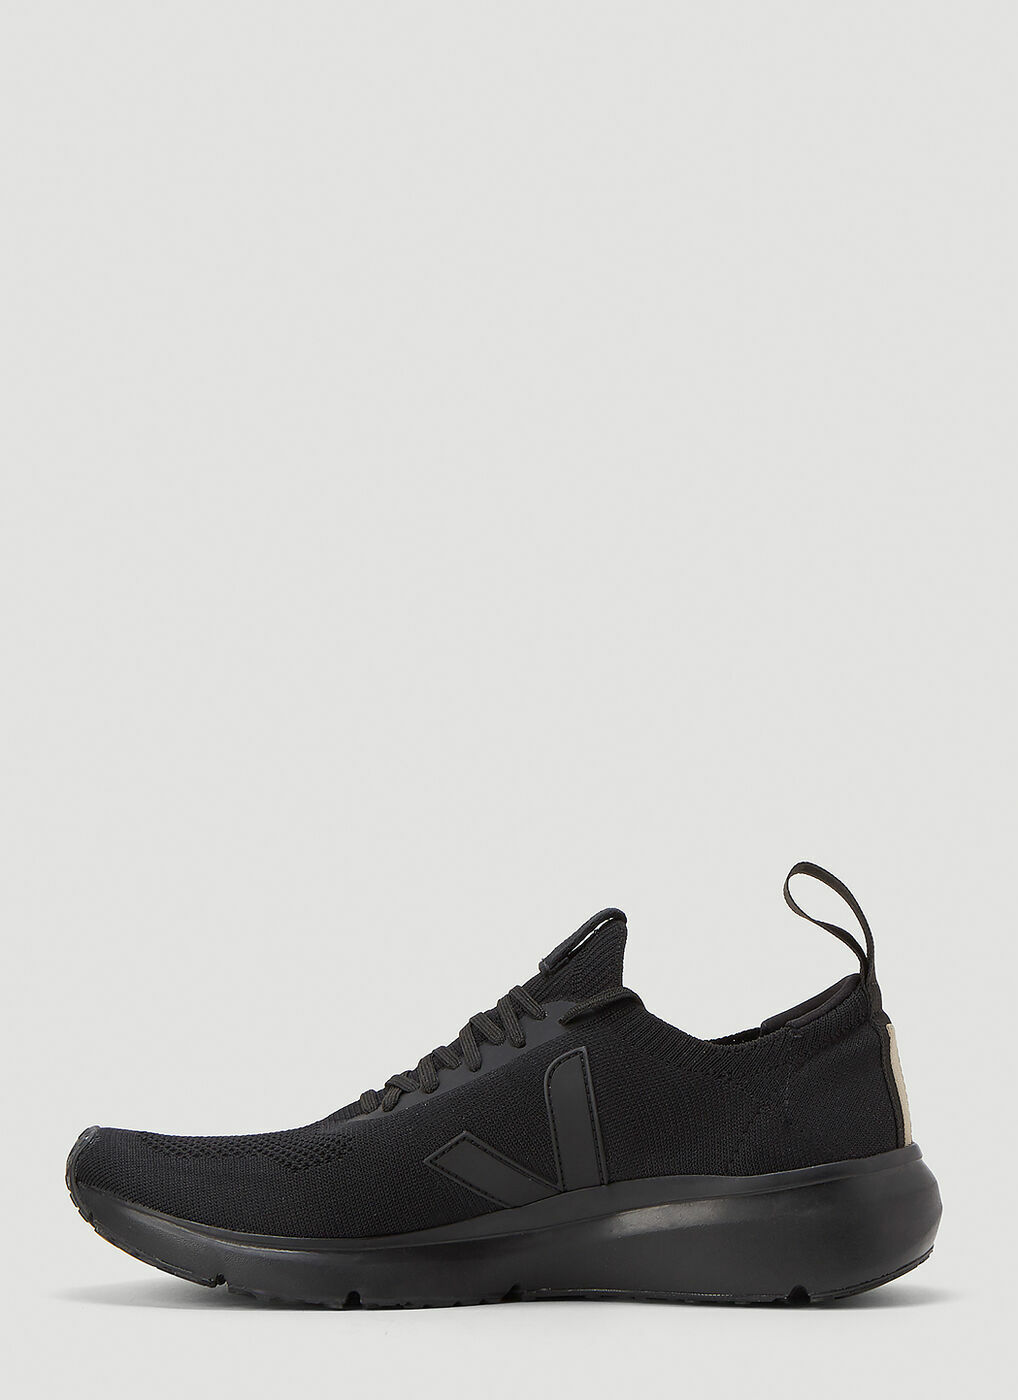 Low Sock Sneakers in Black